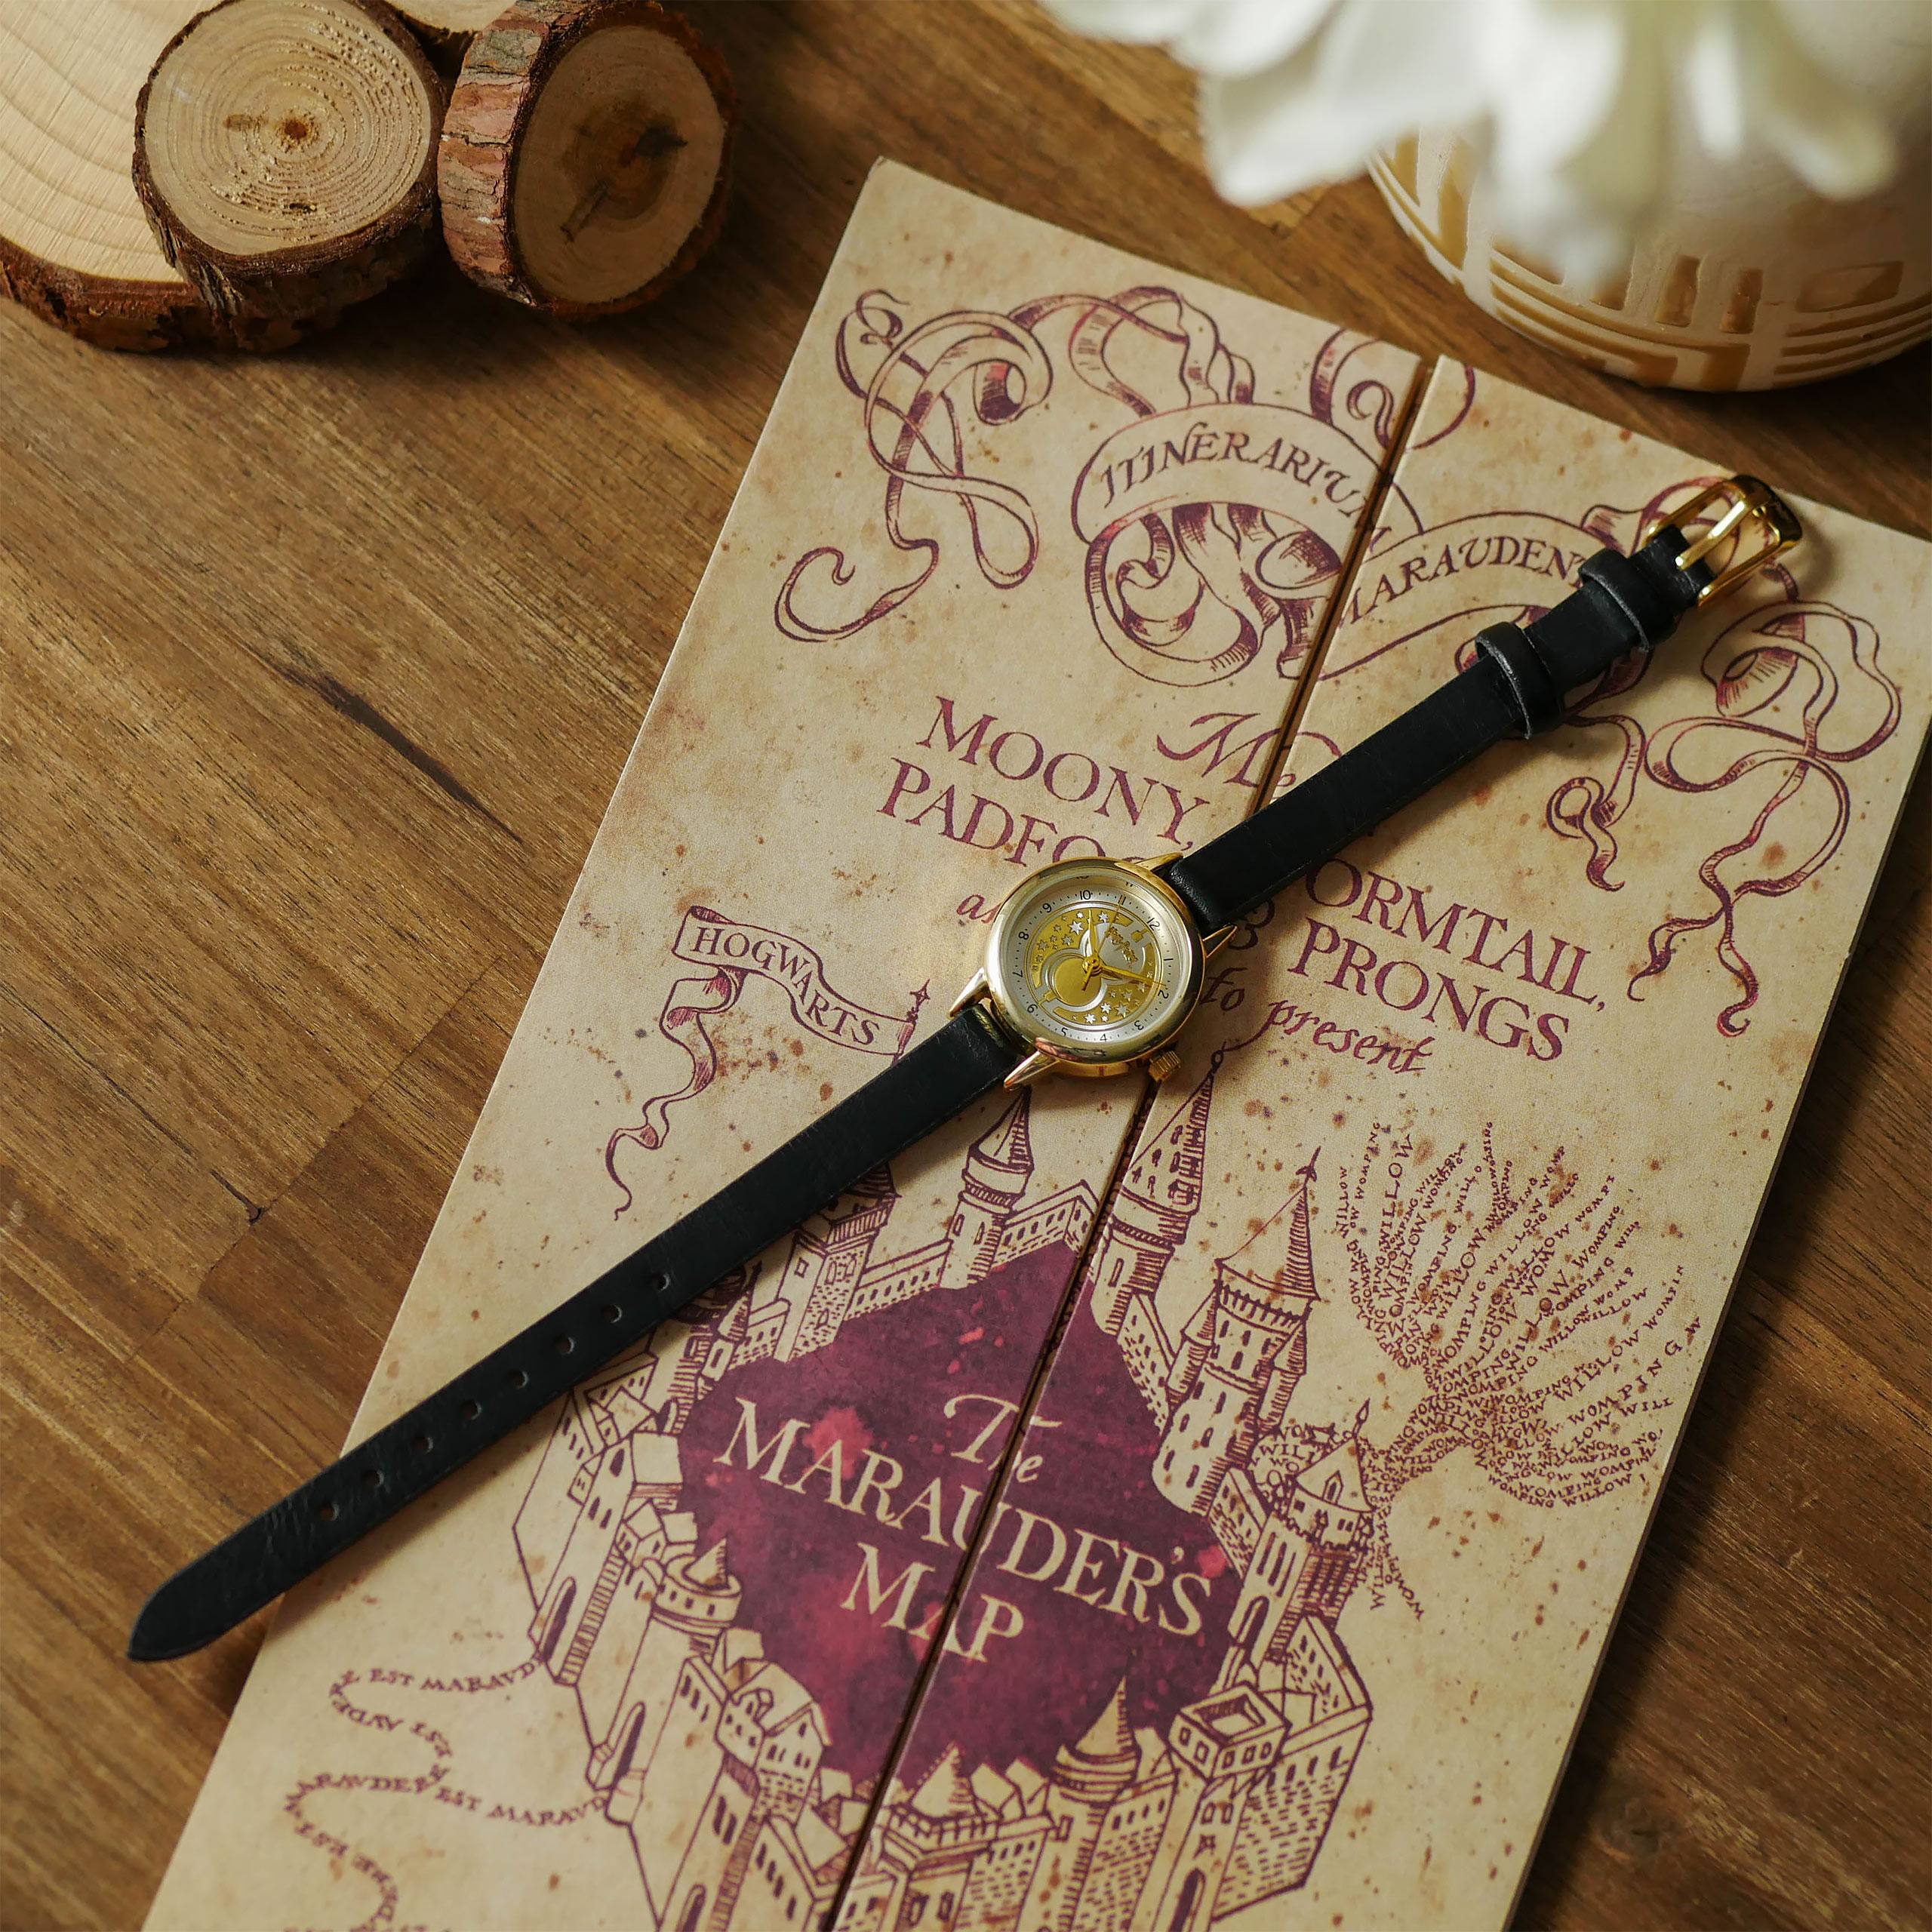 Harry Potter - Montre bracelet Retourneur de Temps